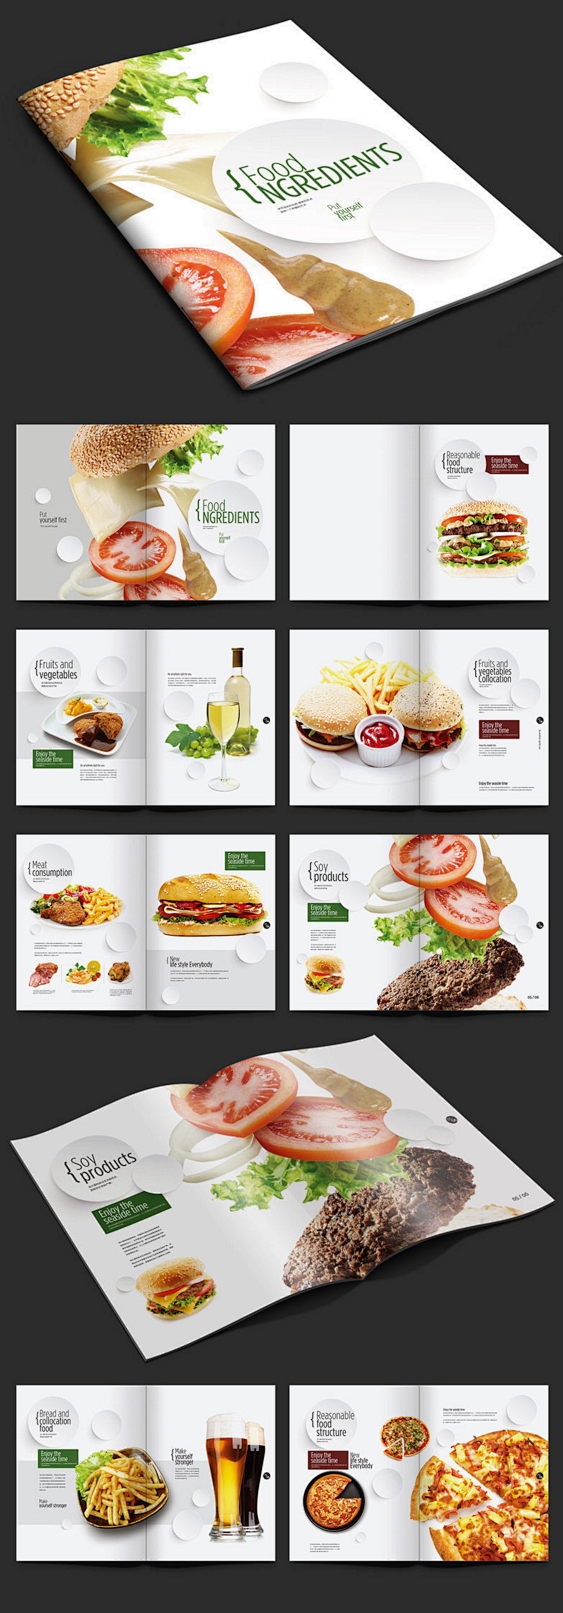 美食画册版式设计PSD素材下载_企业画册...